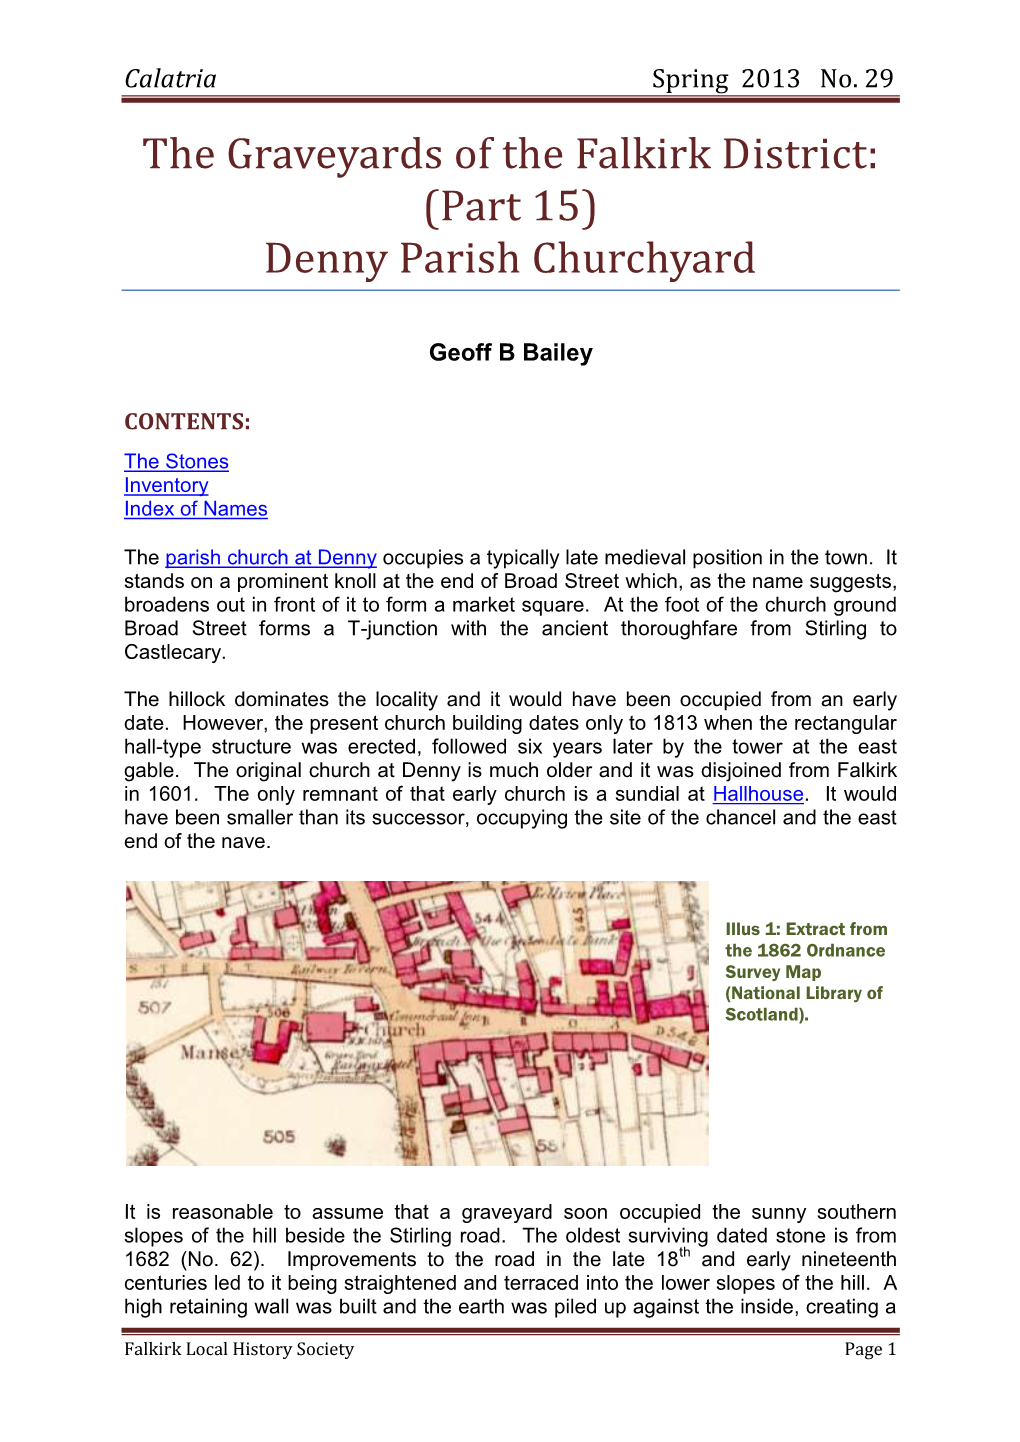 Graveyards – Denny Parish Churchyard